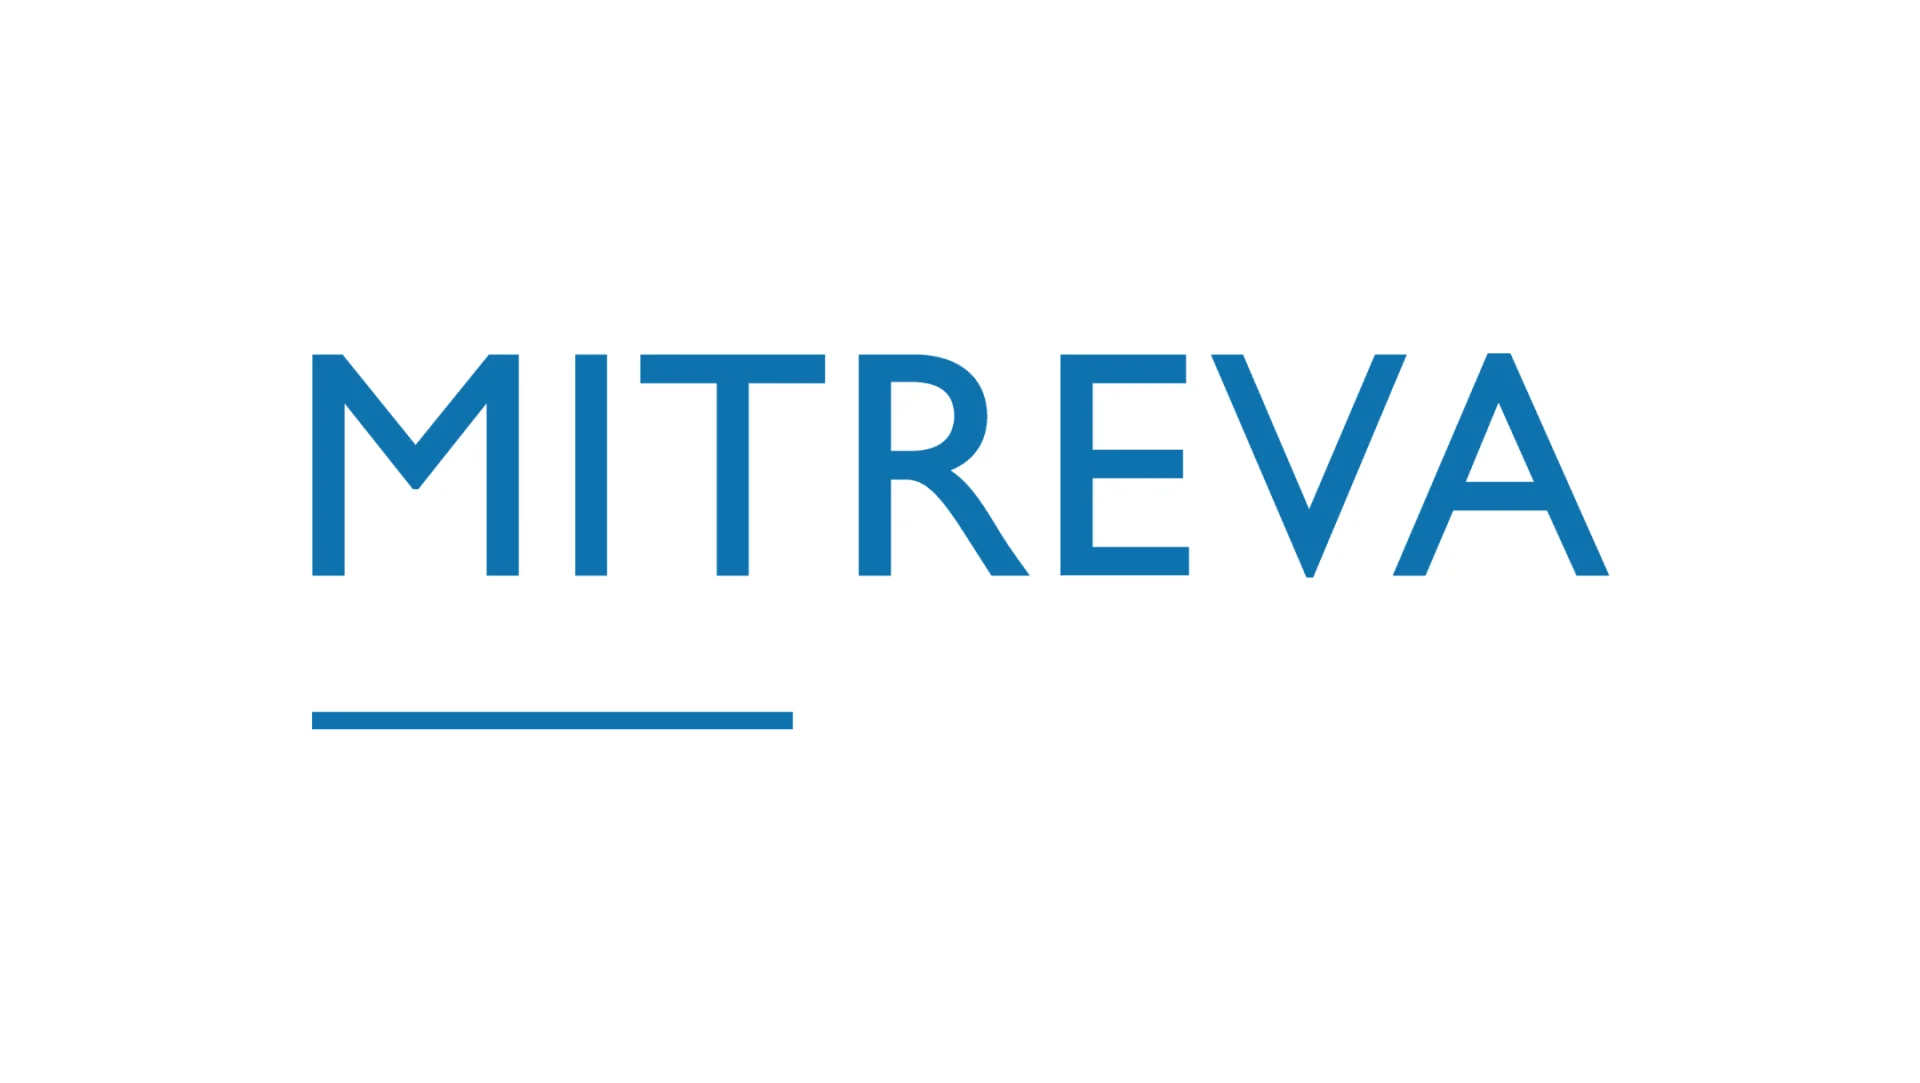 Logo della società Mitreva. Lettere blu su sfondo bianco